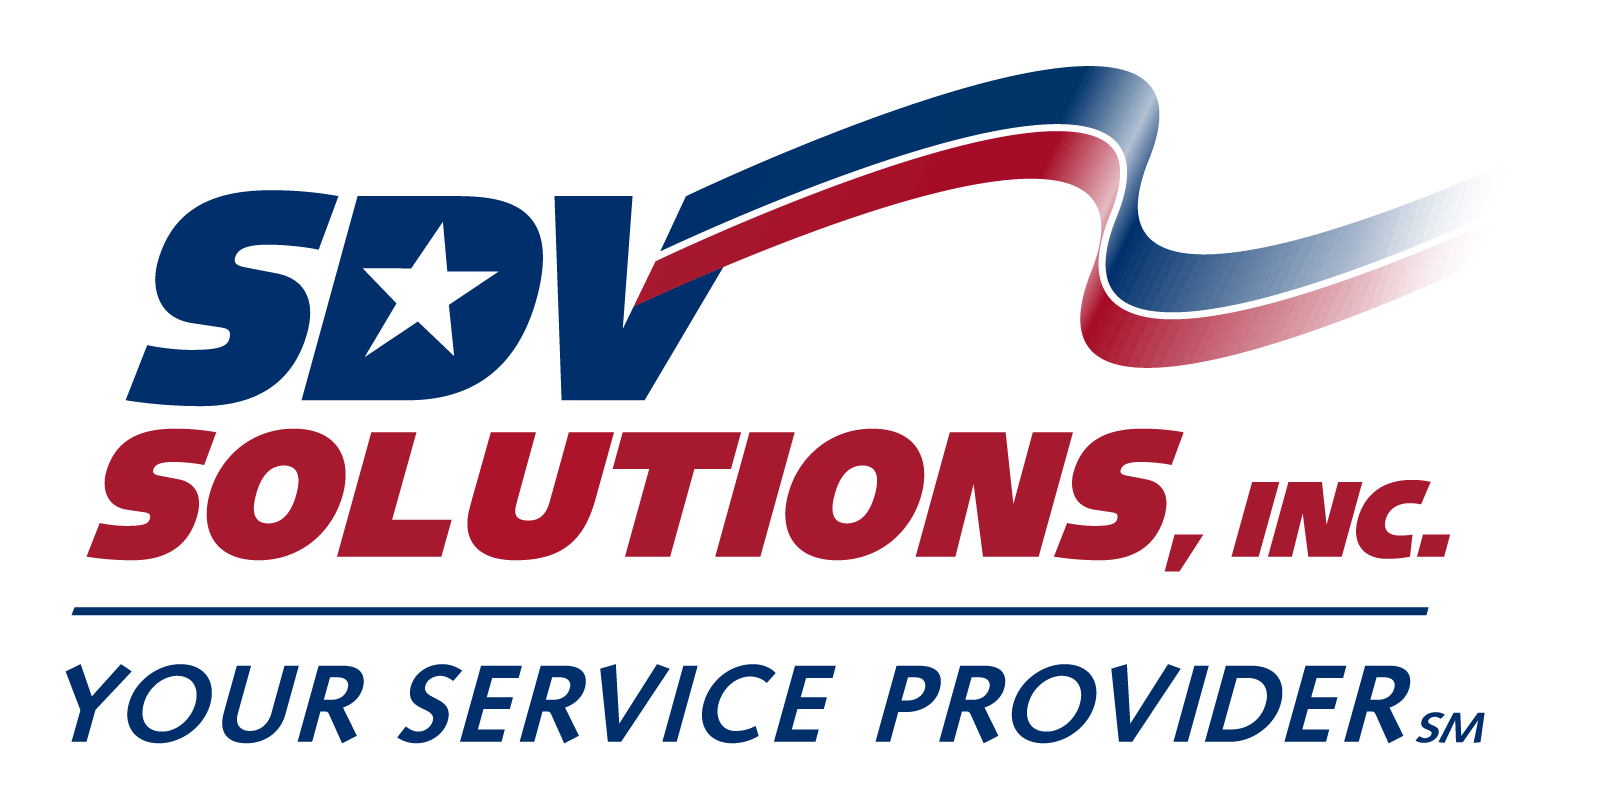 SDV Solutions, Inc.